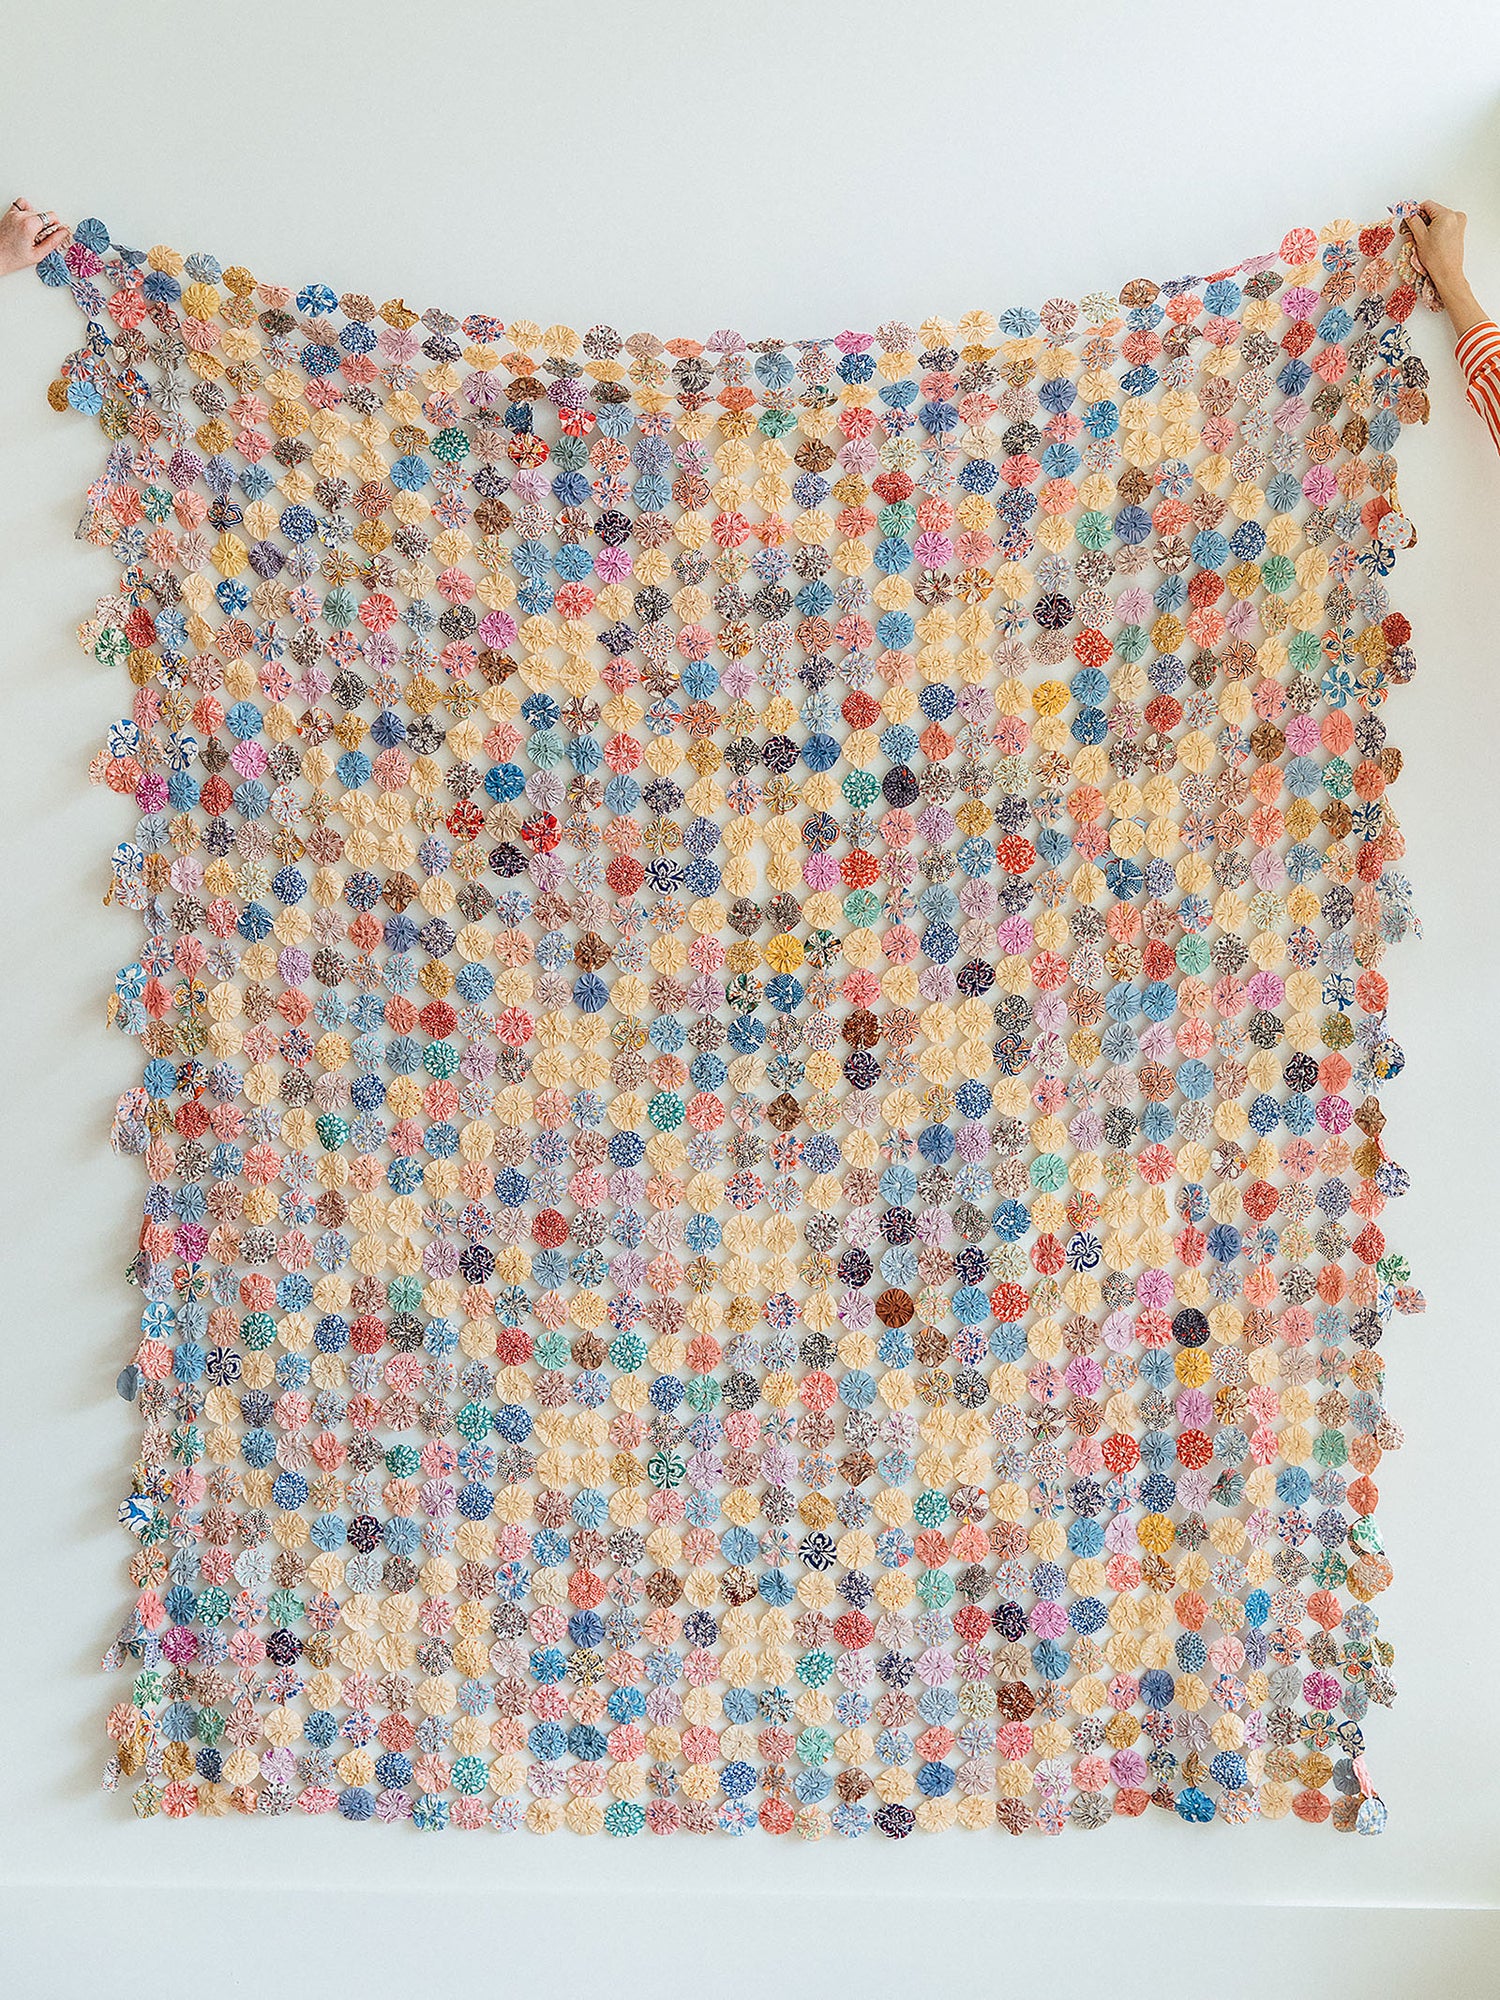 Quilts + Textiles